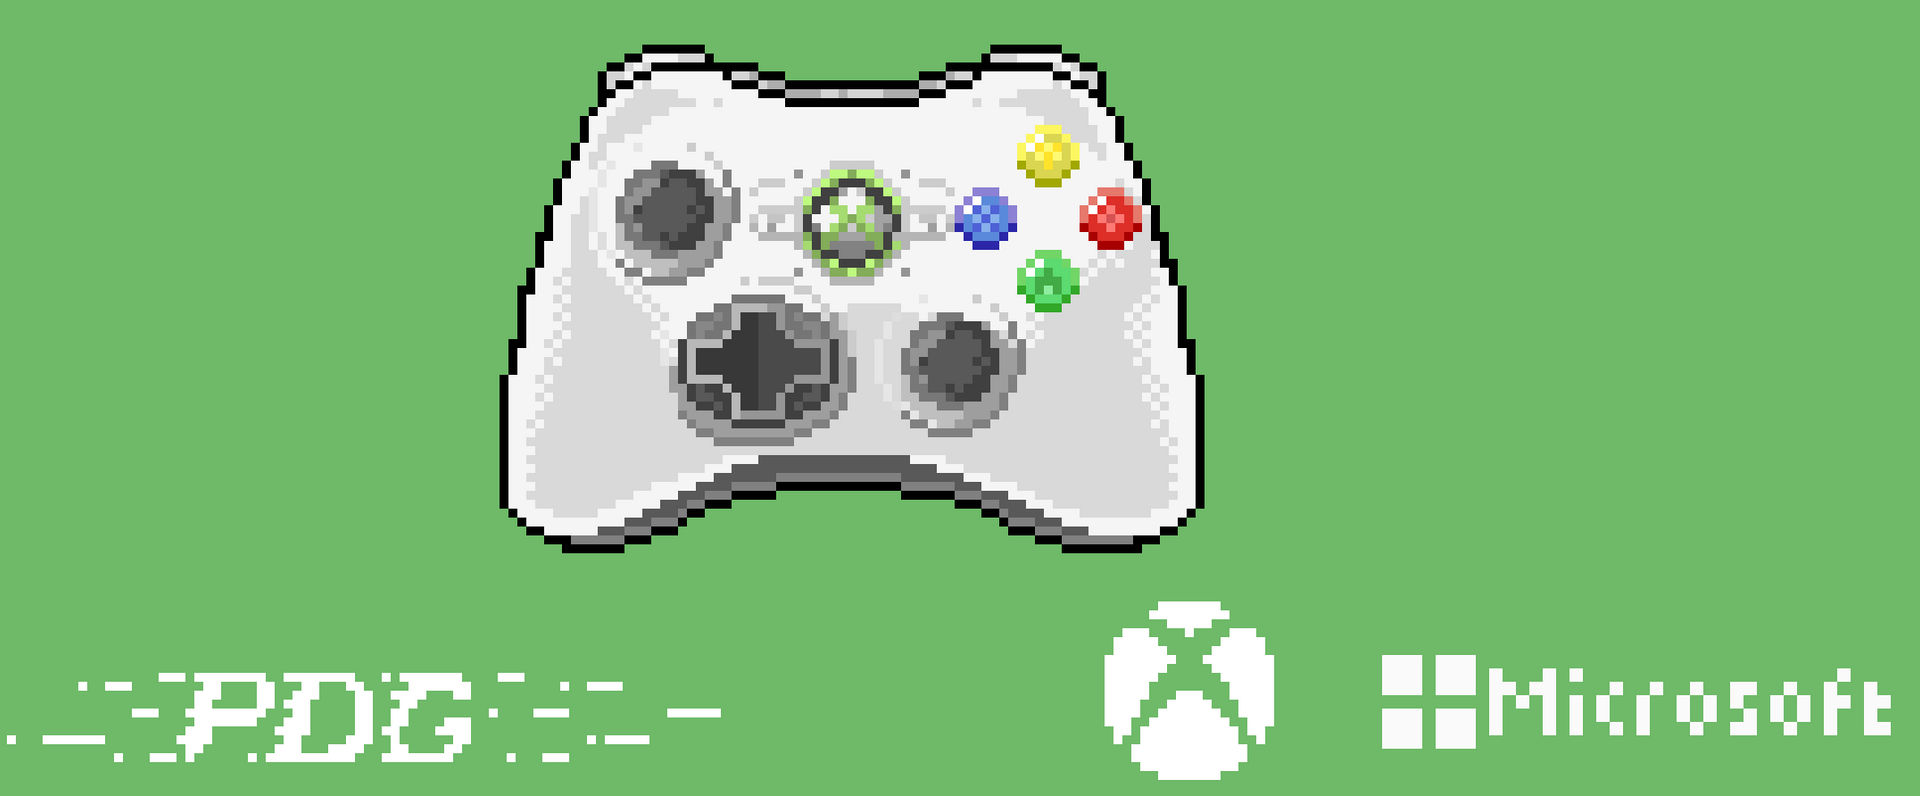 Xbox Game Studios – PixelGumTV